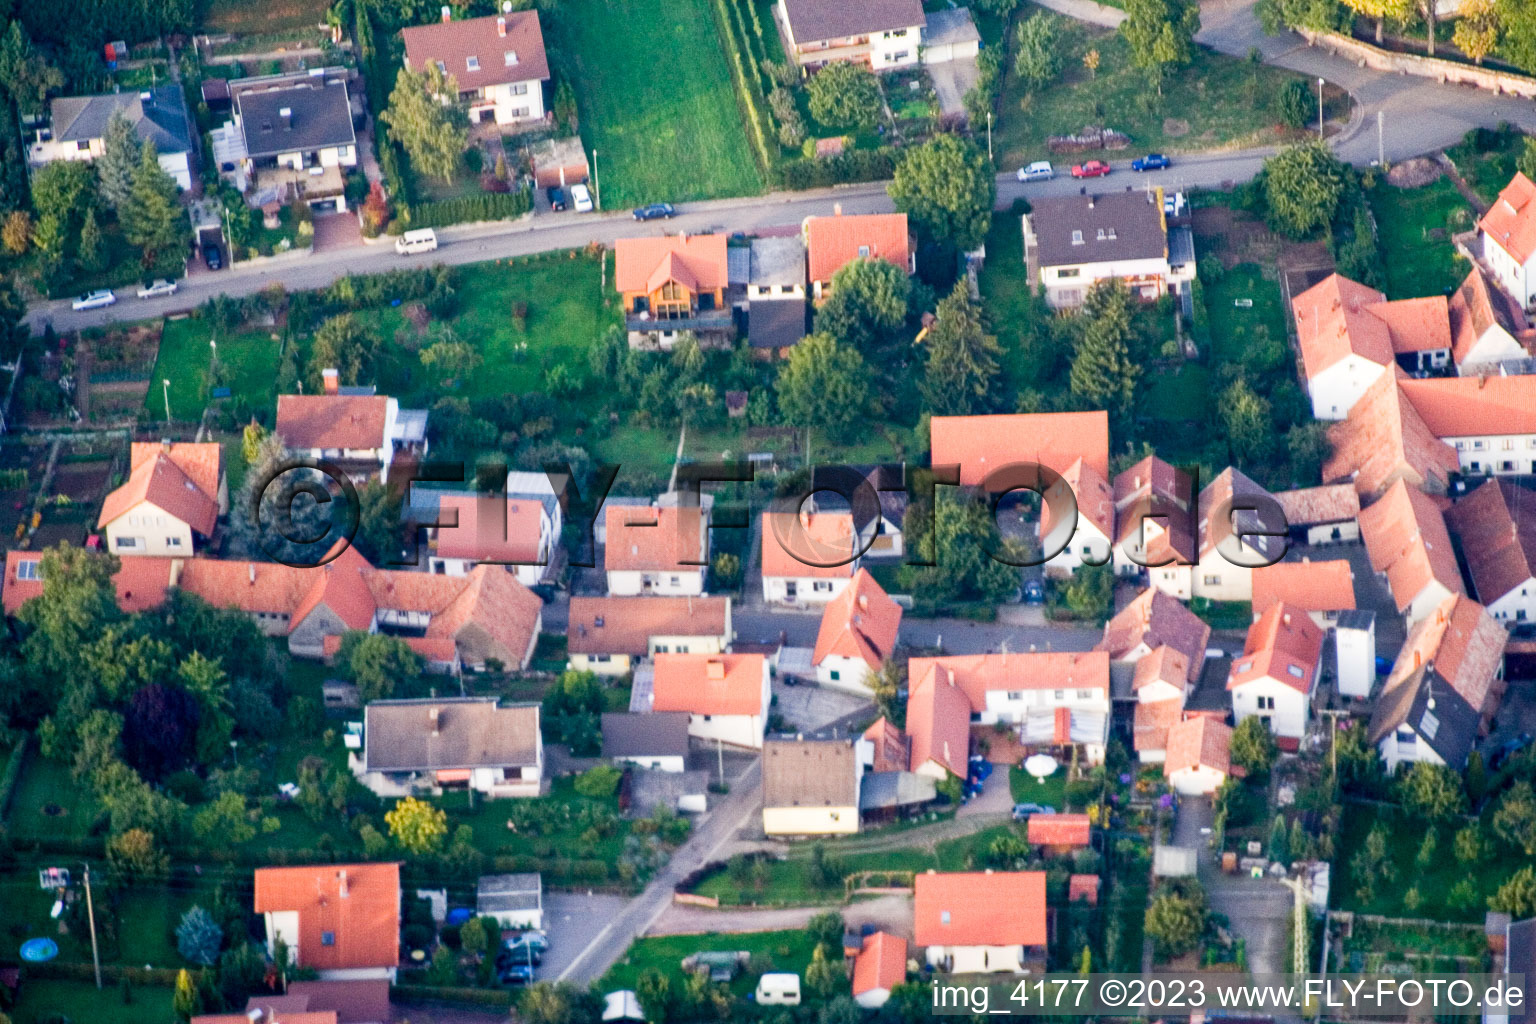 Aerial view of District Schweigen in Schweigen-Rechtenbach in the state Rhineland-Palatinate, Germany